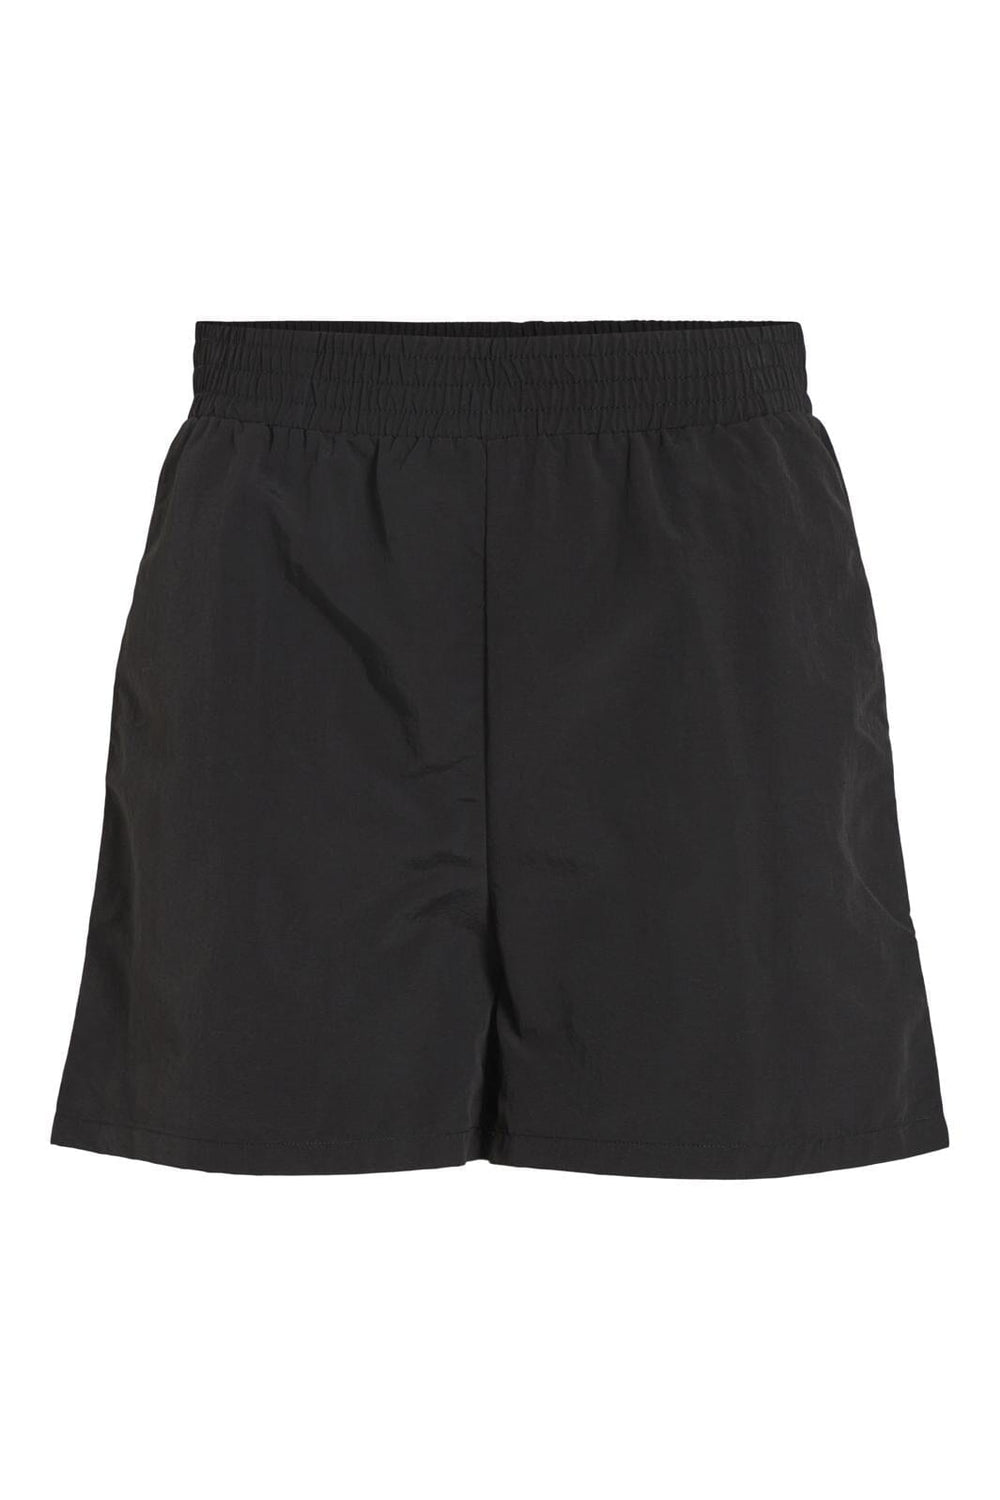 Vila - Vinyllie New Shorts/1 - 4283353 Black